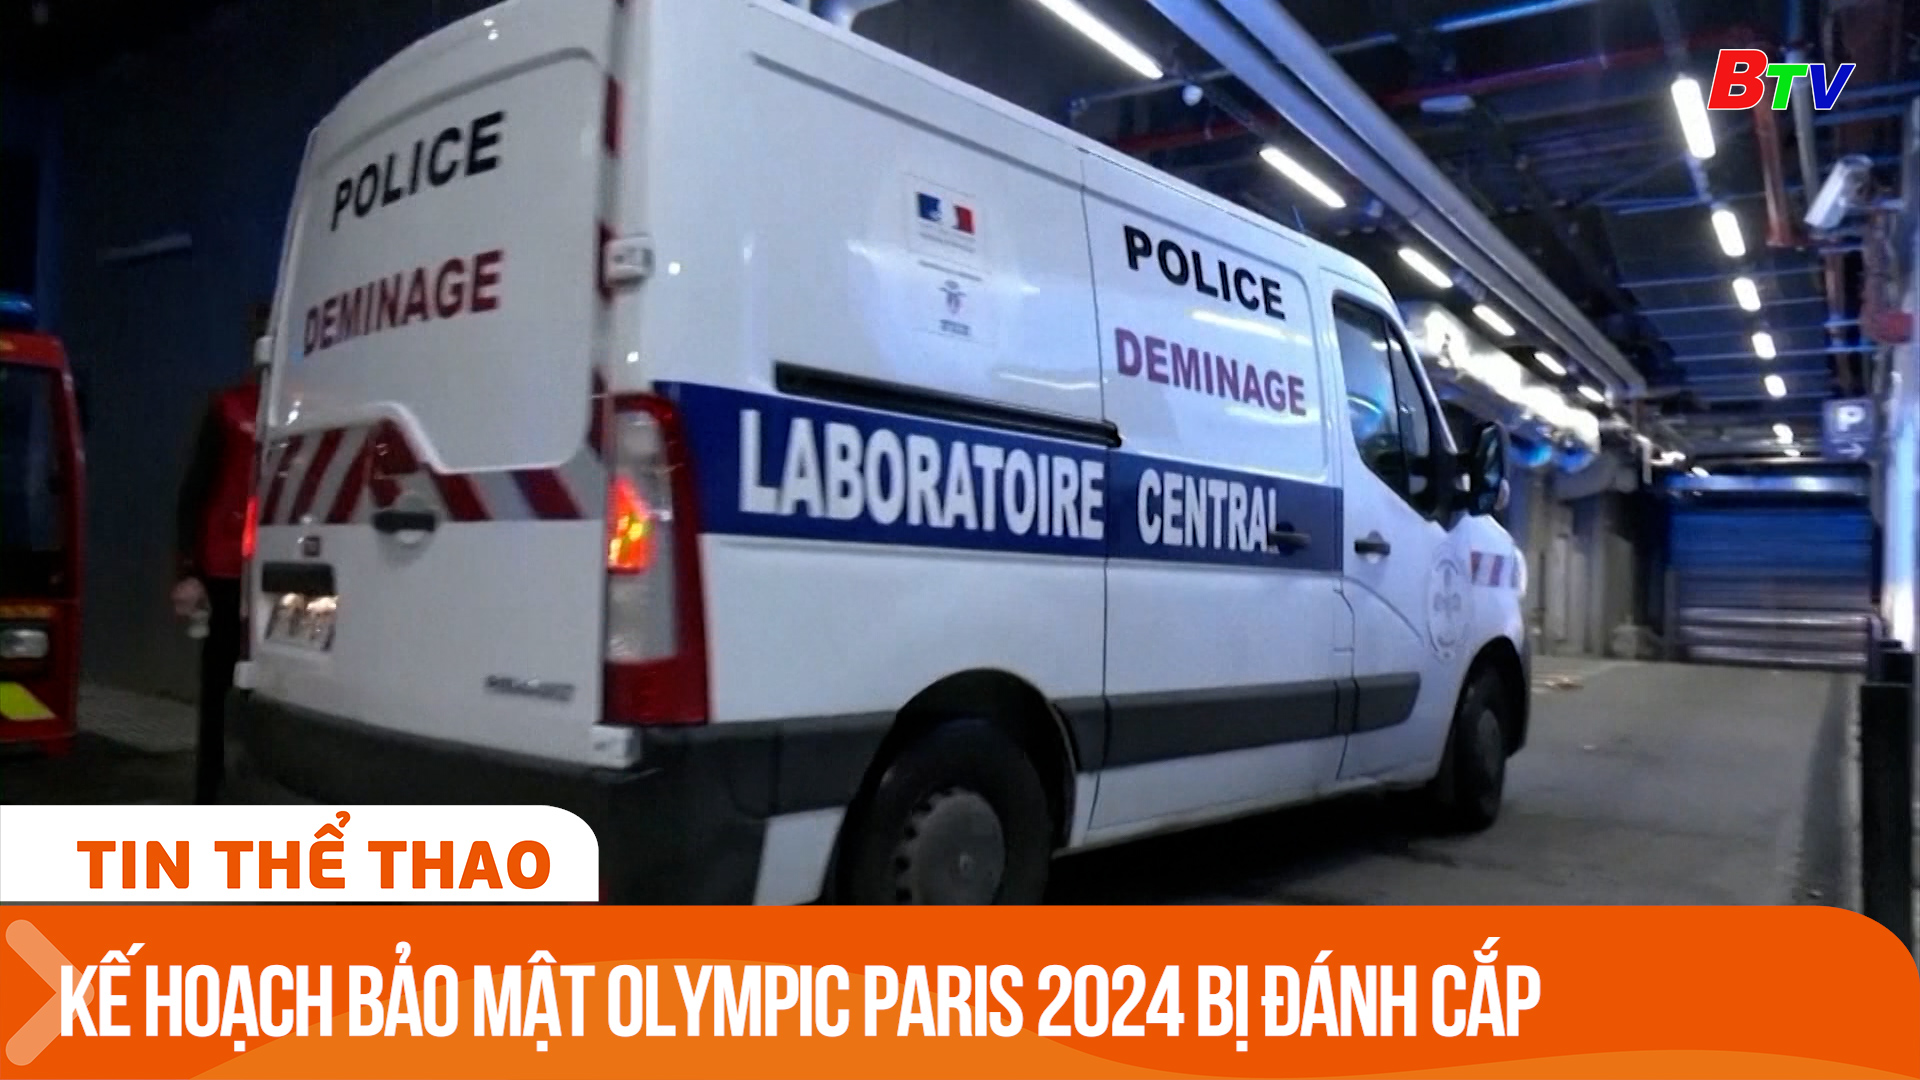 Máy tính và USB chứa kế hoạch bảo mật Olympic Paris 2024 bị đánh cắp | Tin Thể thao 24h